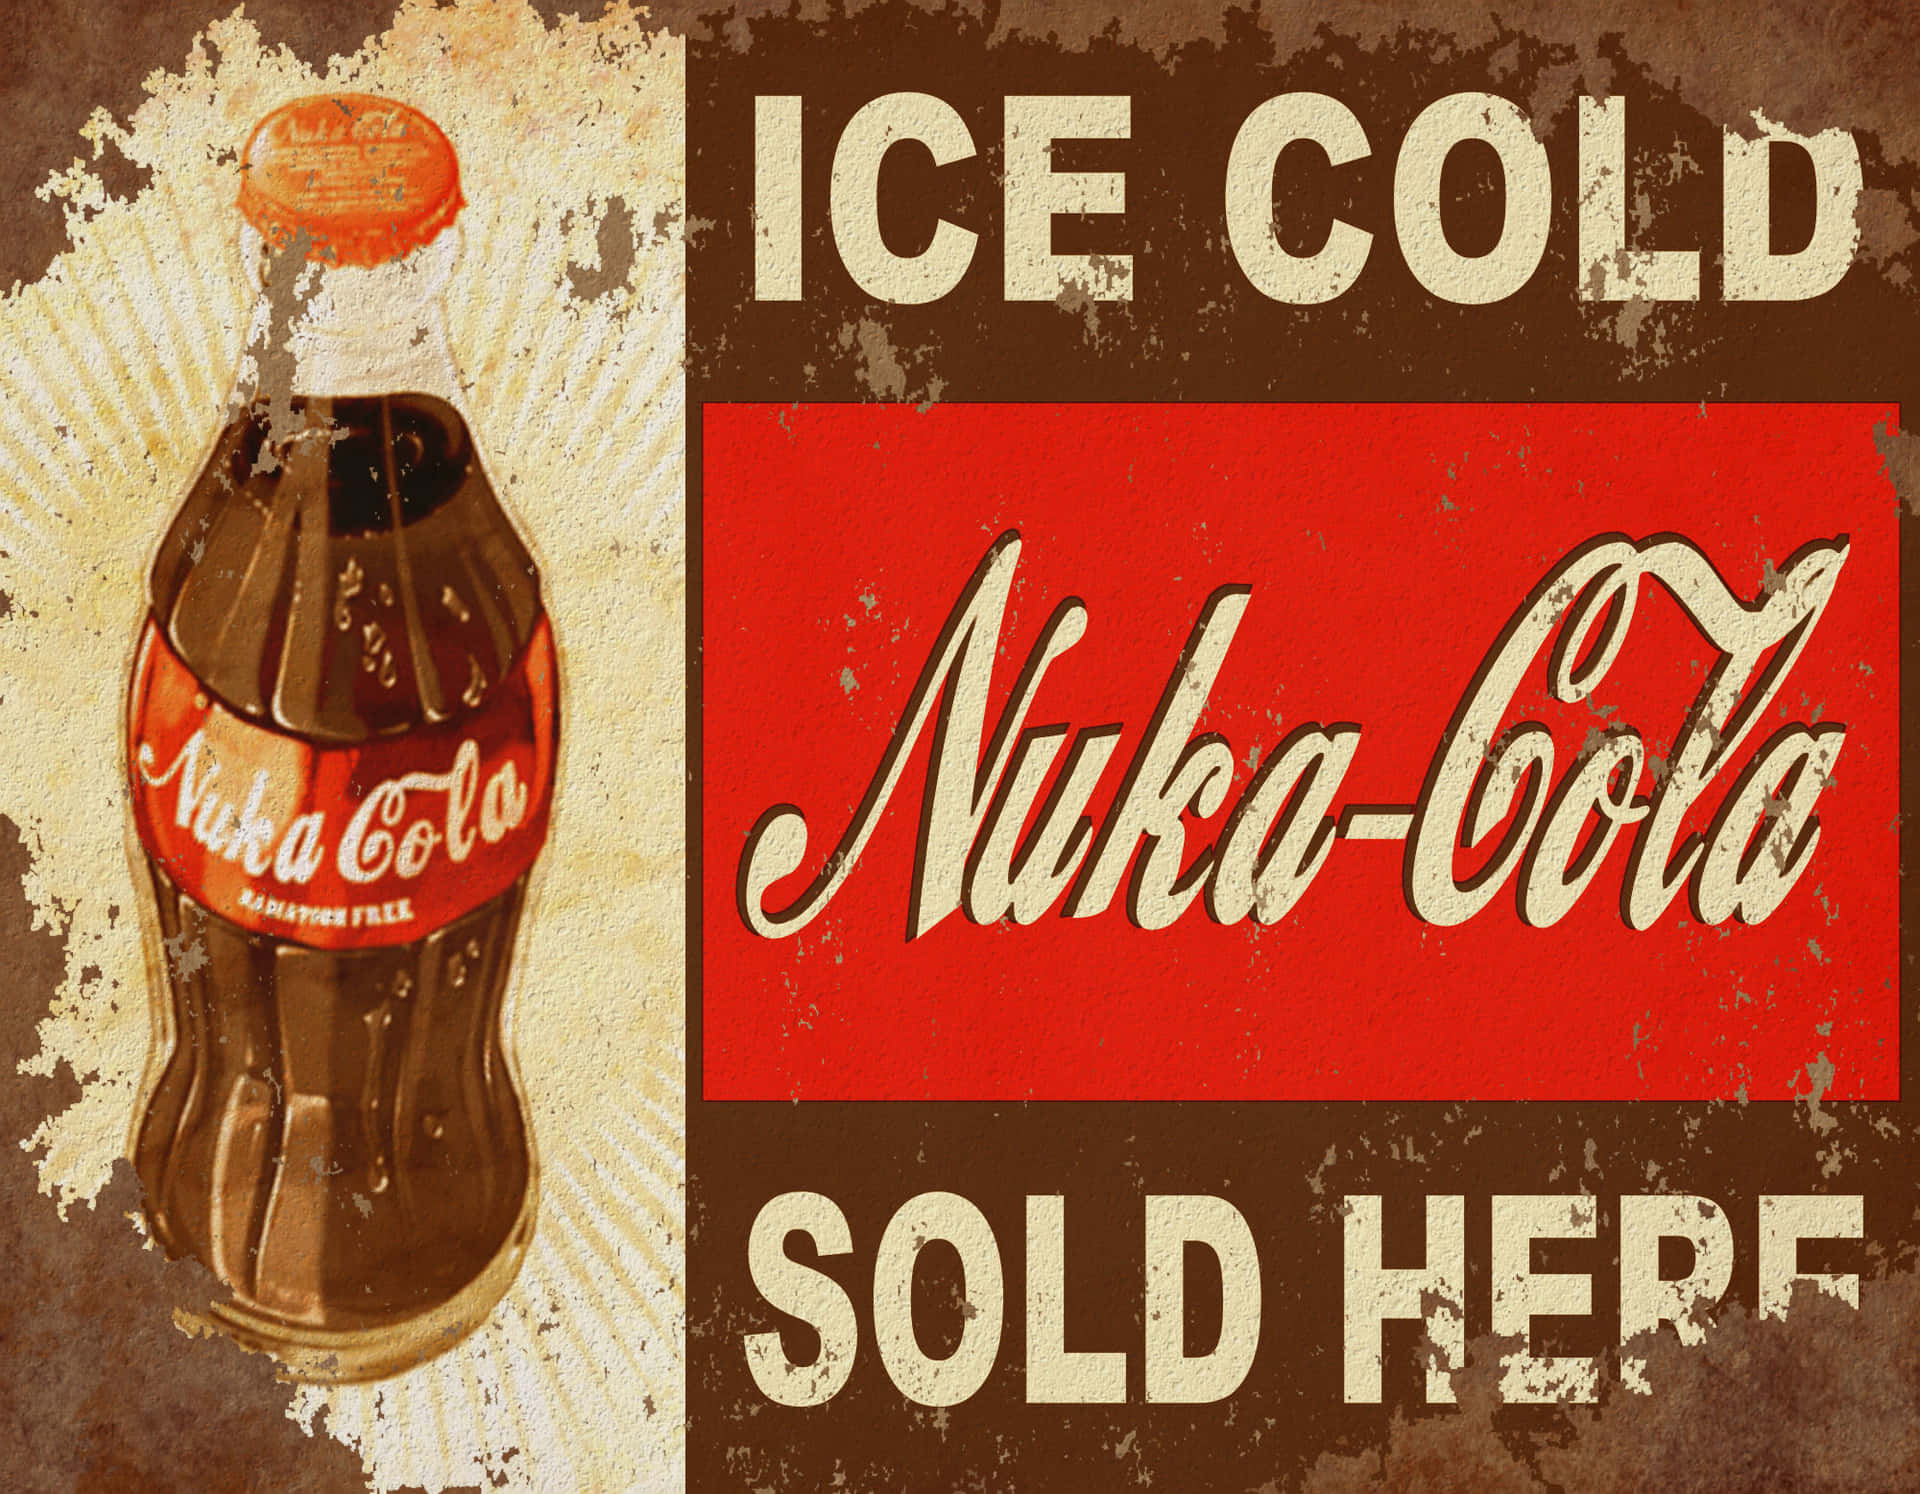 Genießensie Den Klassischen Geschmack Von Nuka Cola! Wallpaper